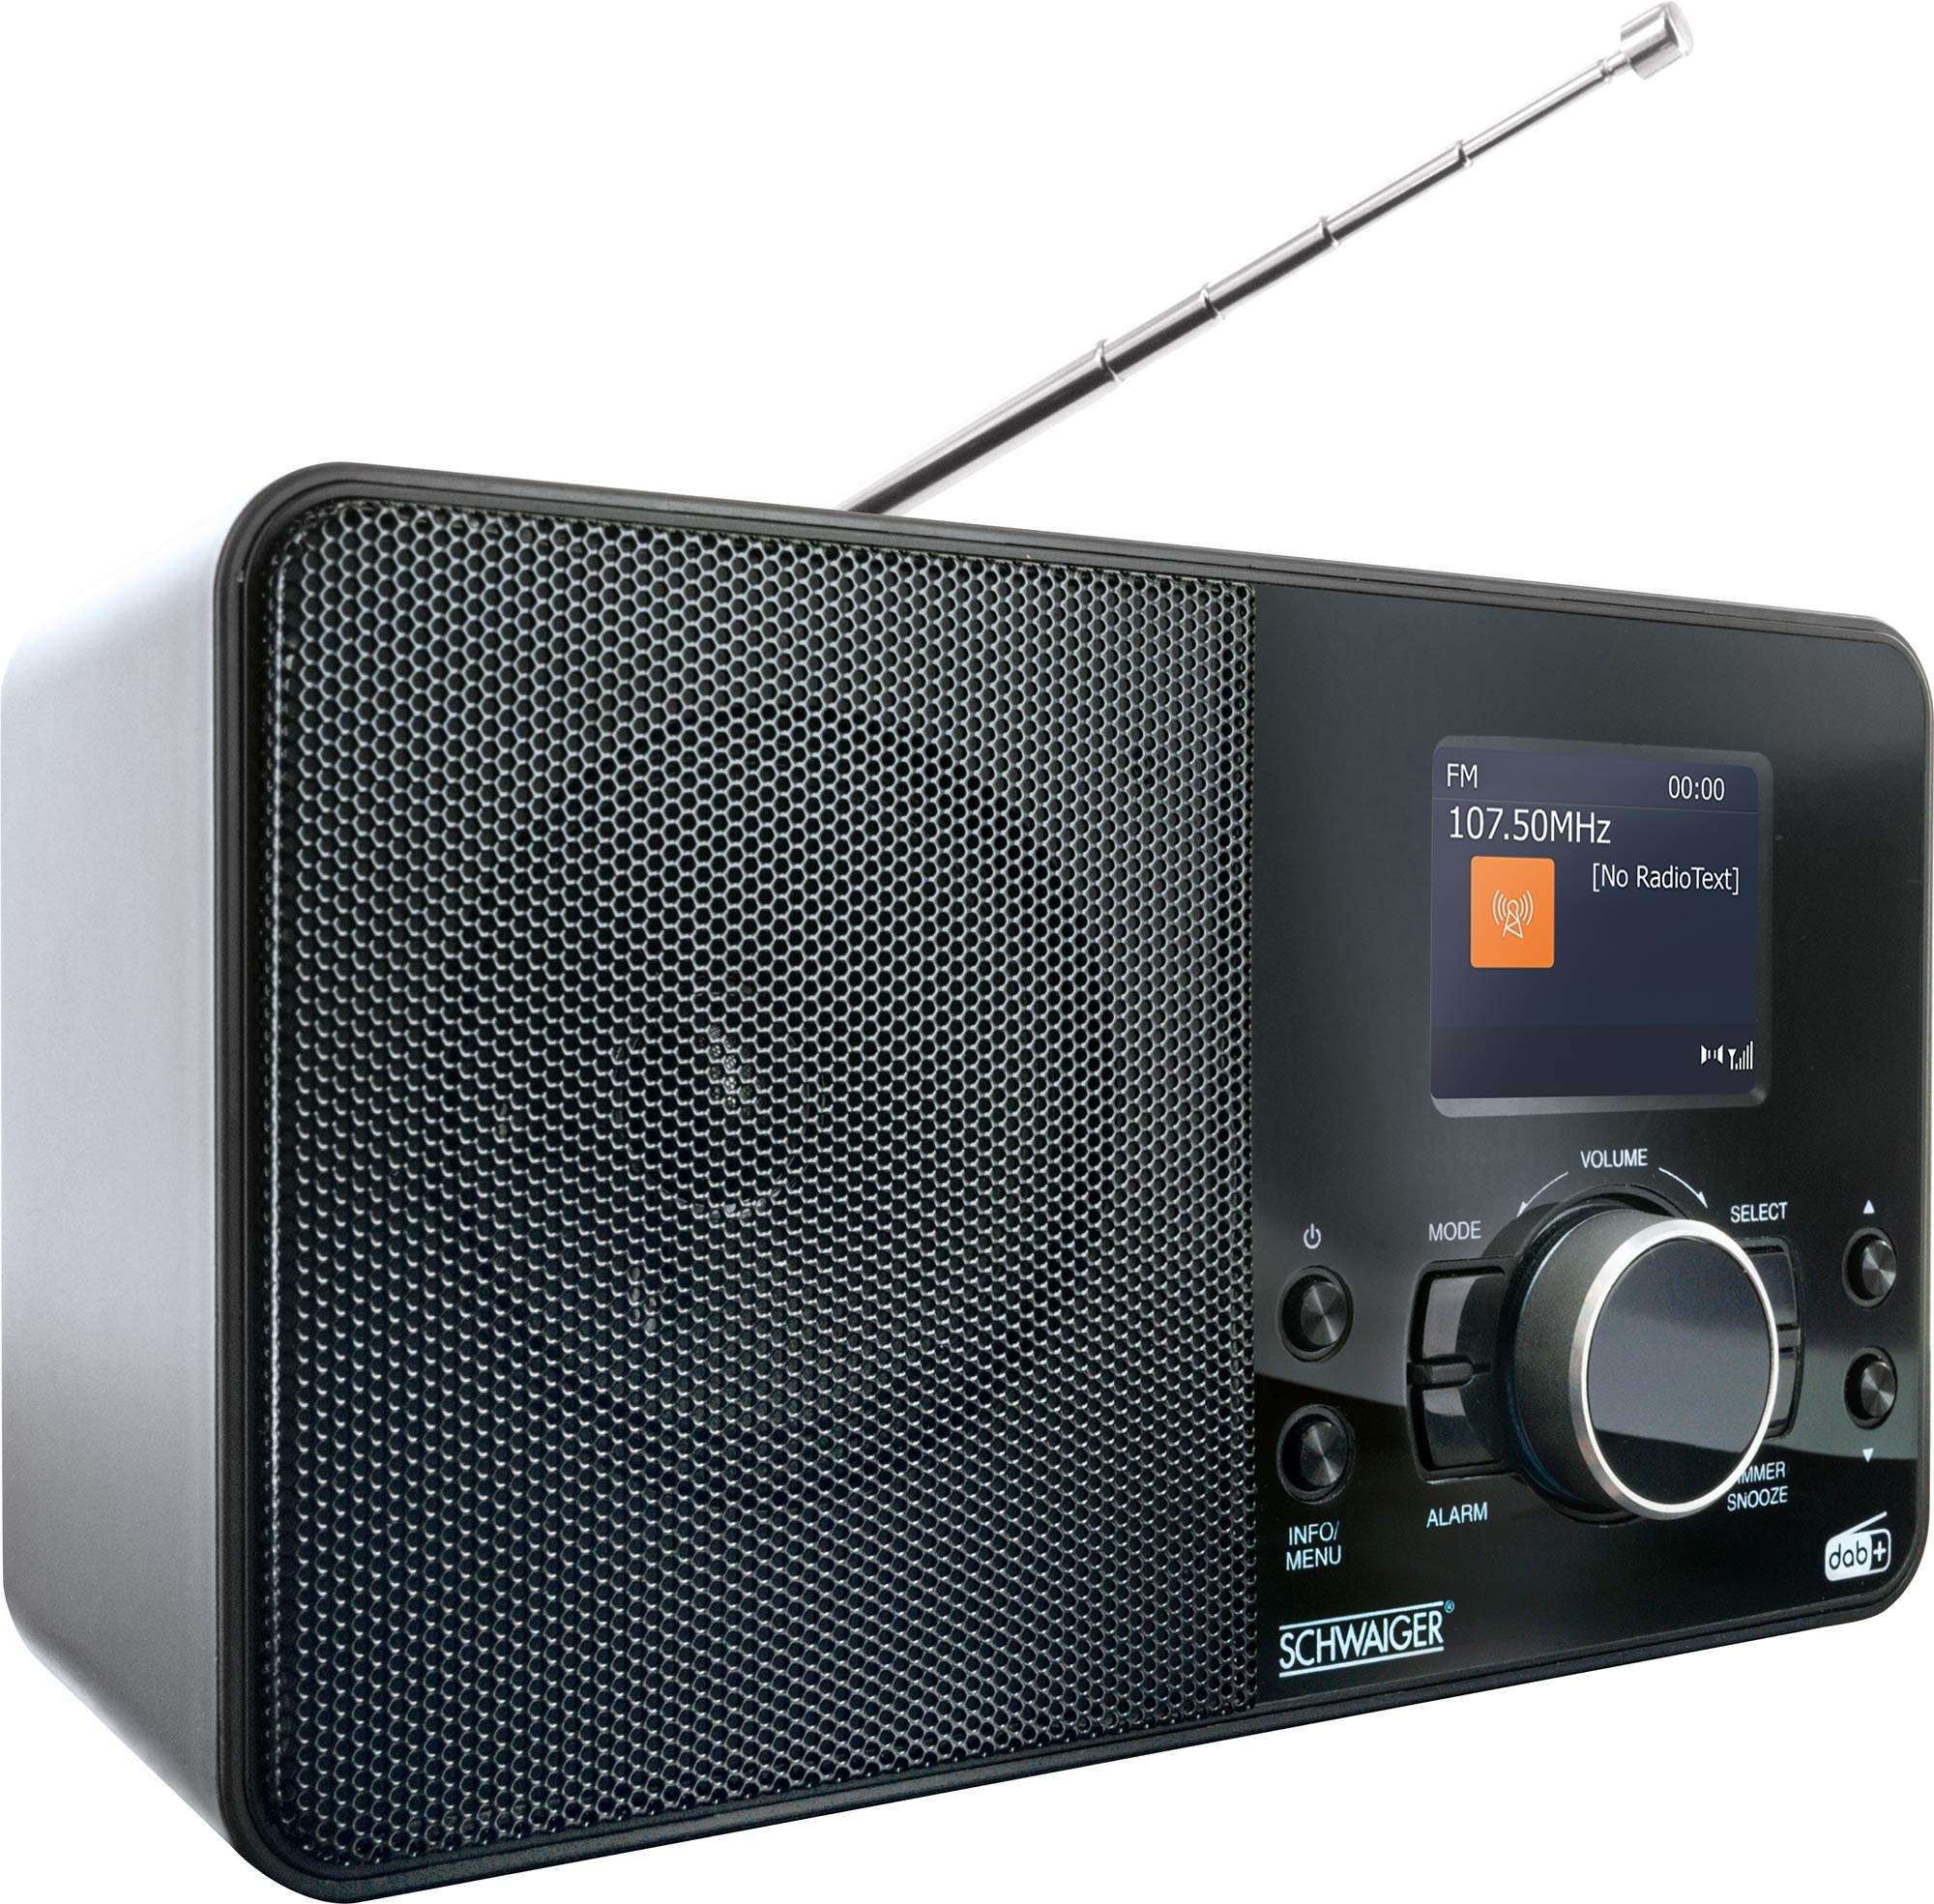 SCHWAIGER DAB400 513 Digitales Radio DAB+/FM Wecker LCD Farbdisplay Bluetooth Stereo HiFi Lautsprecher Stabantenne Netz- und Batteriebetrieb schwarz